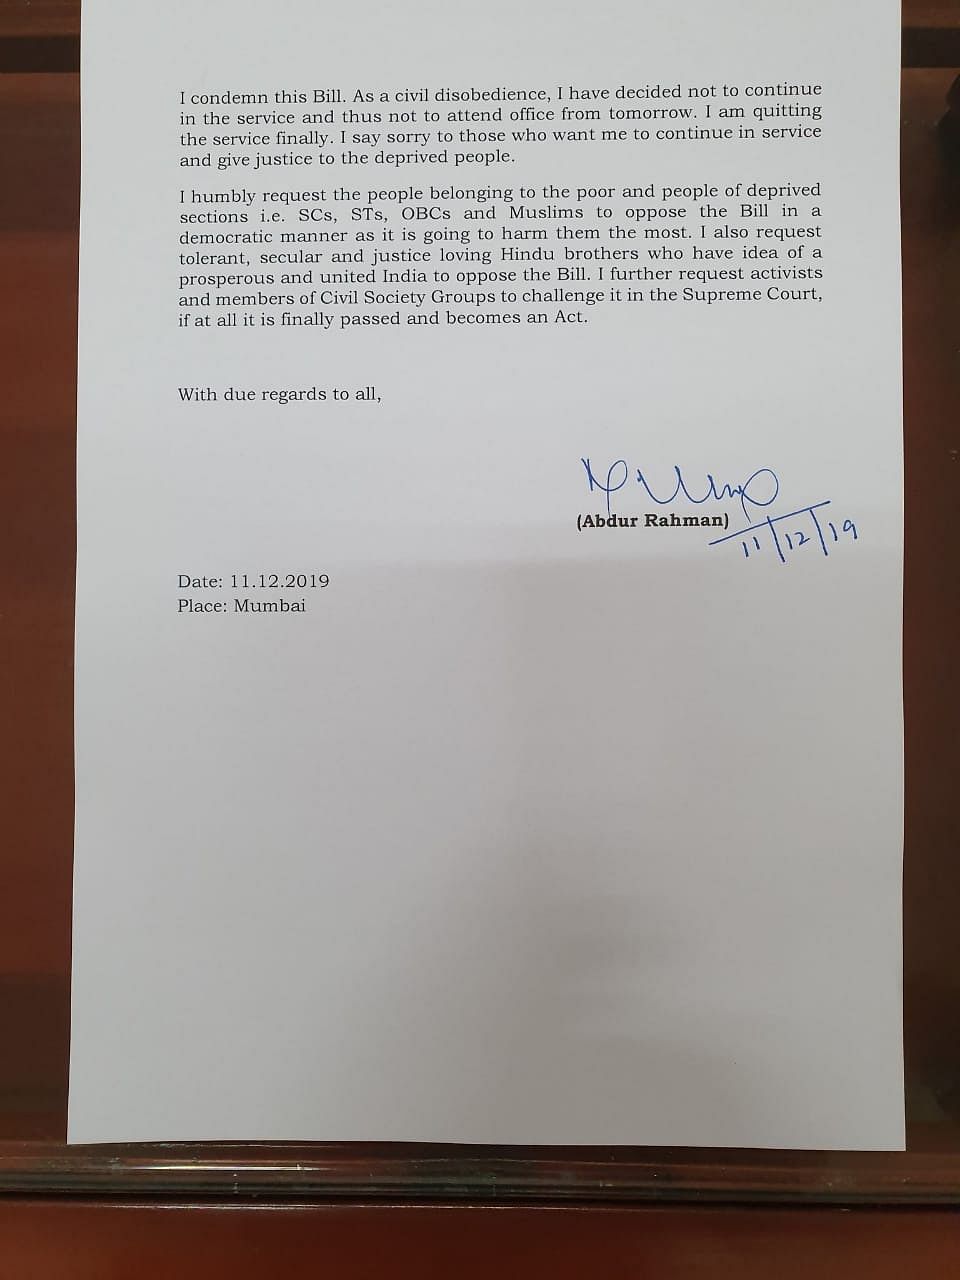 IPS अब्दुर रहमान ने इस विधेयक को असंवैधानिक बताते हुए मुंबई में इस्तीफा दिया है